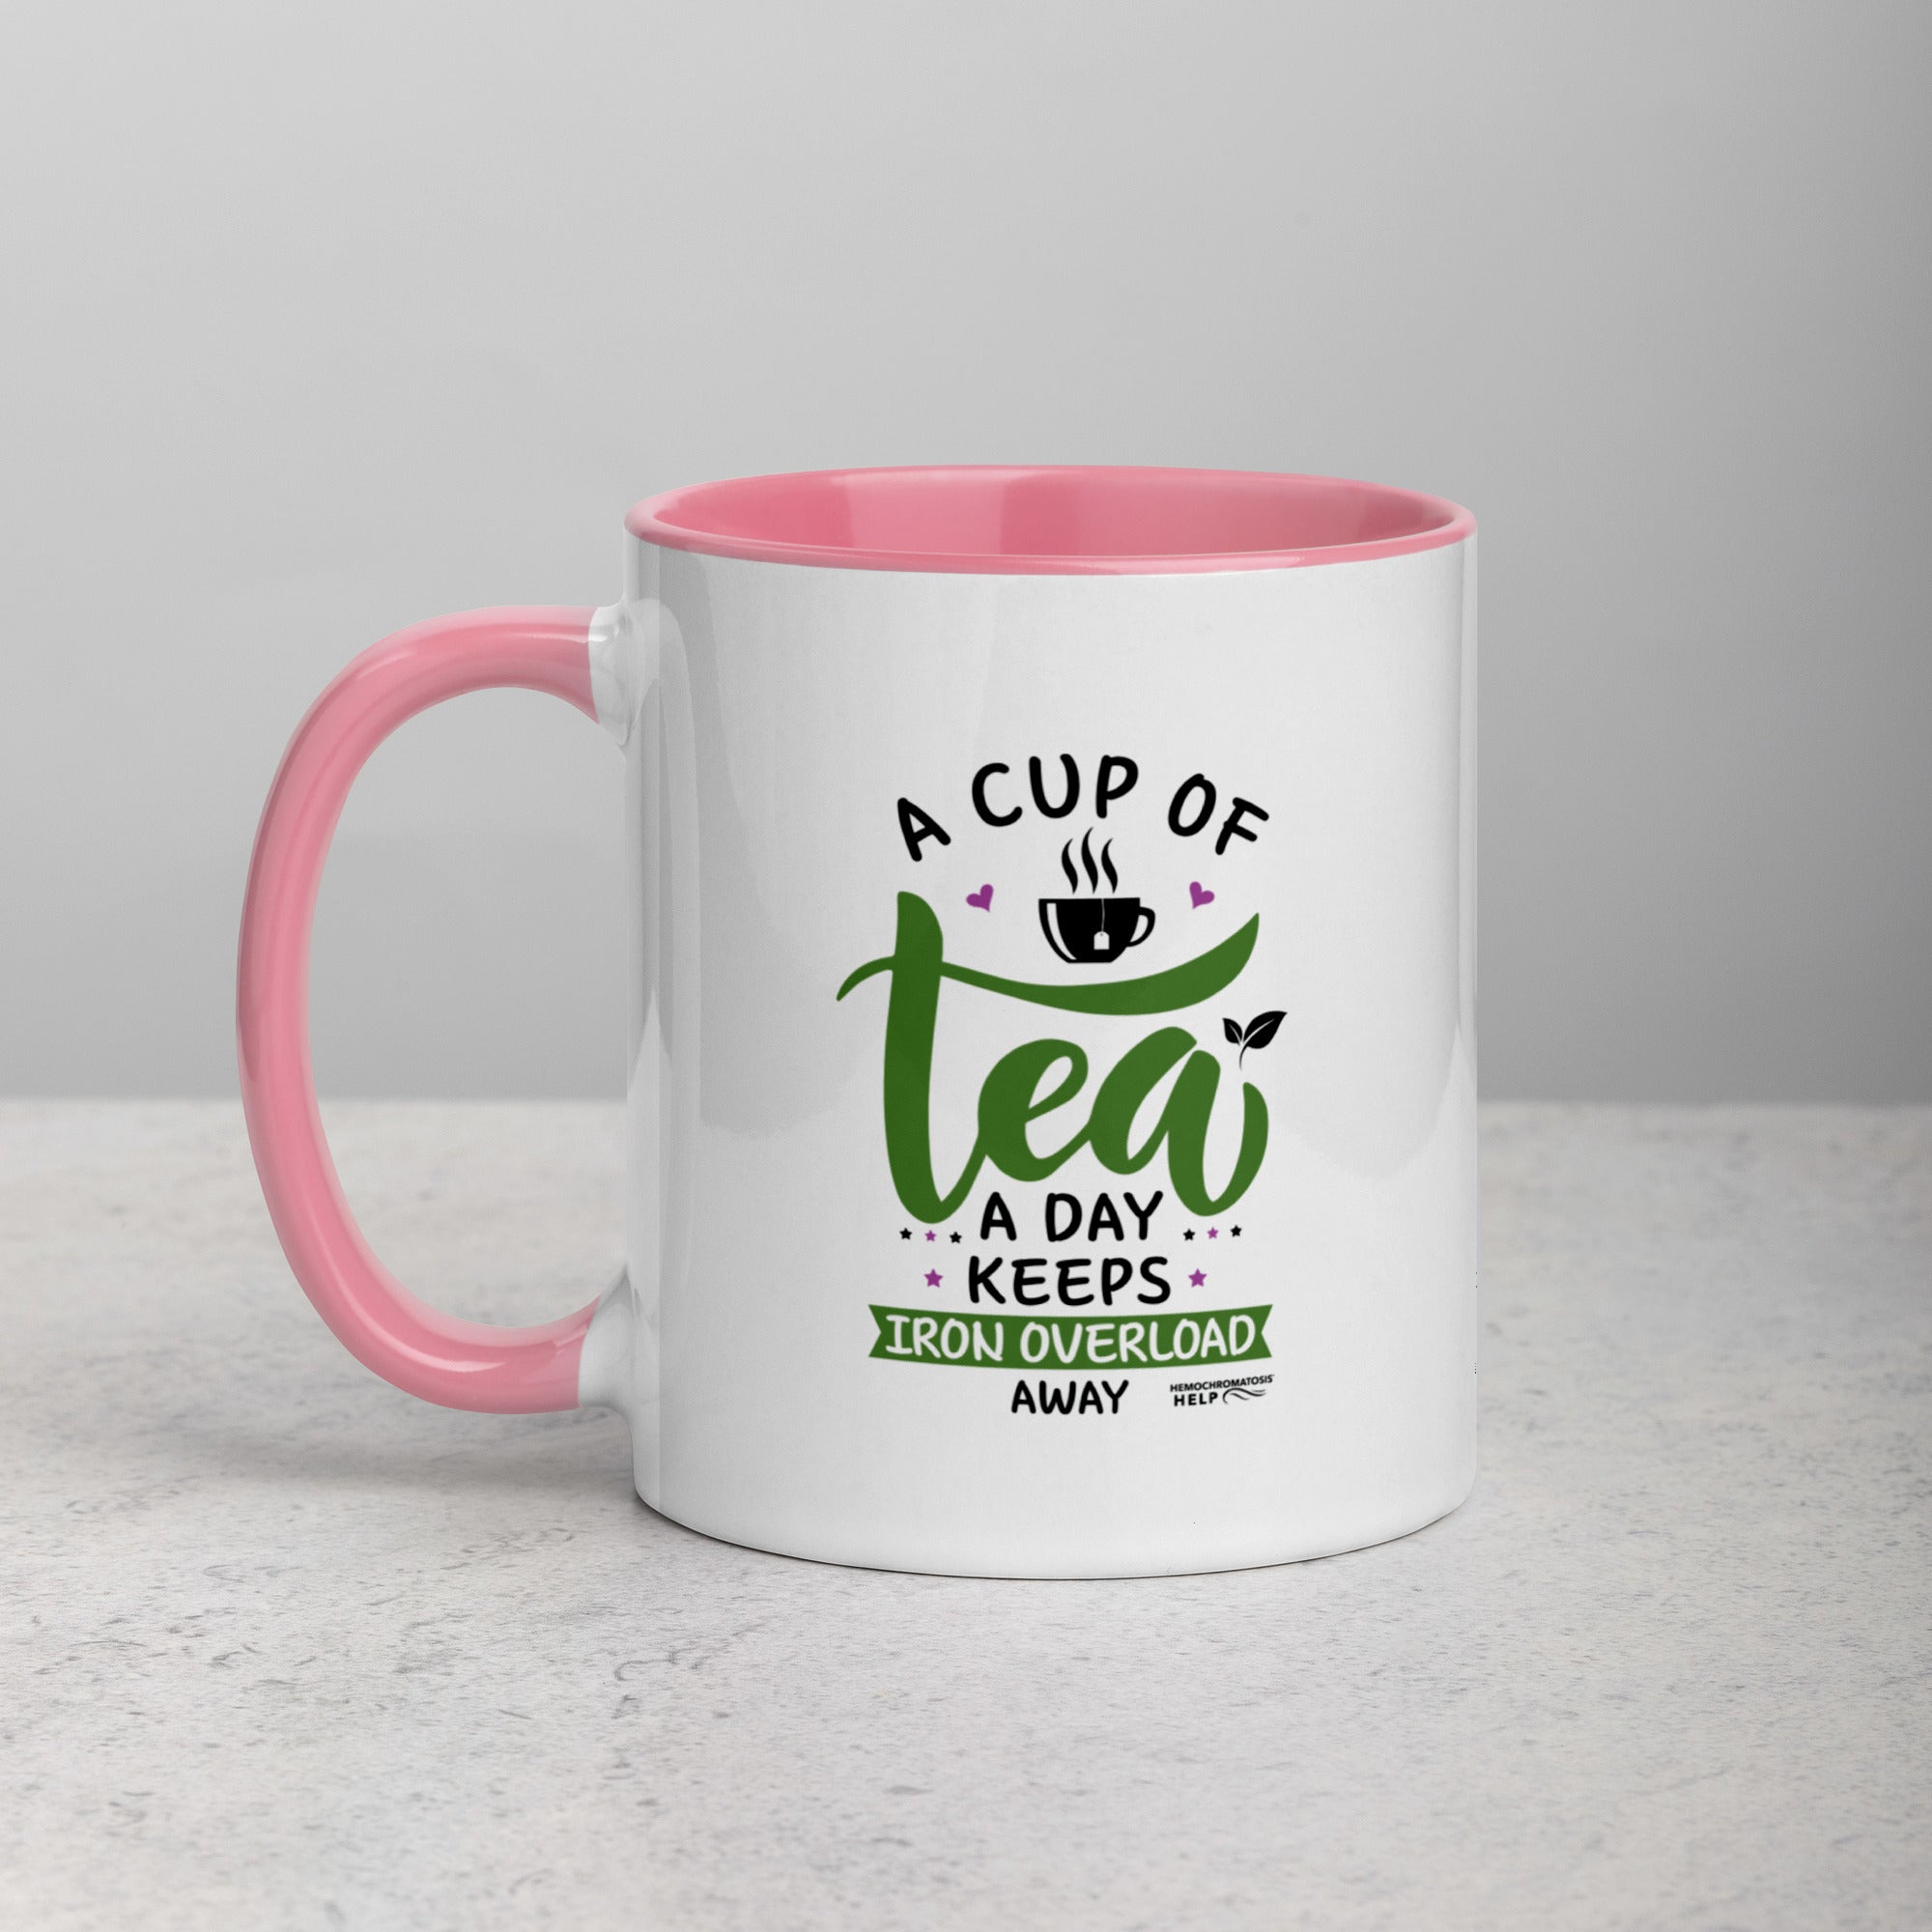 "A Cup of Tea A Day Keeps Iron Overload Away" Hemochromatosis Awareness 11 oz Ceramic Mug